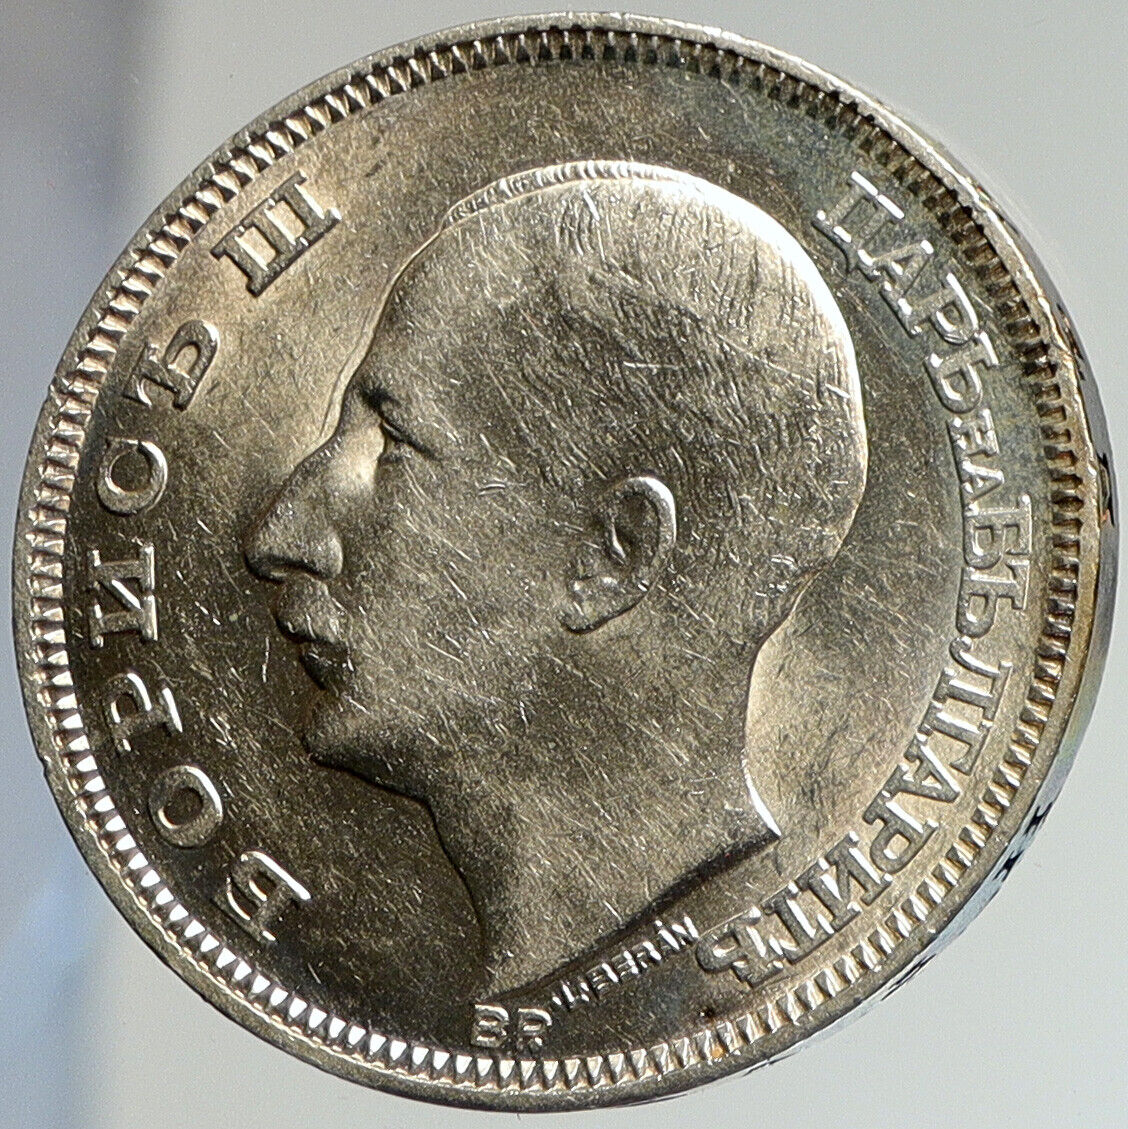 1930 BULGARIA Tsar Boris III Large European UNC Silver 100 Leva Coin i112450